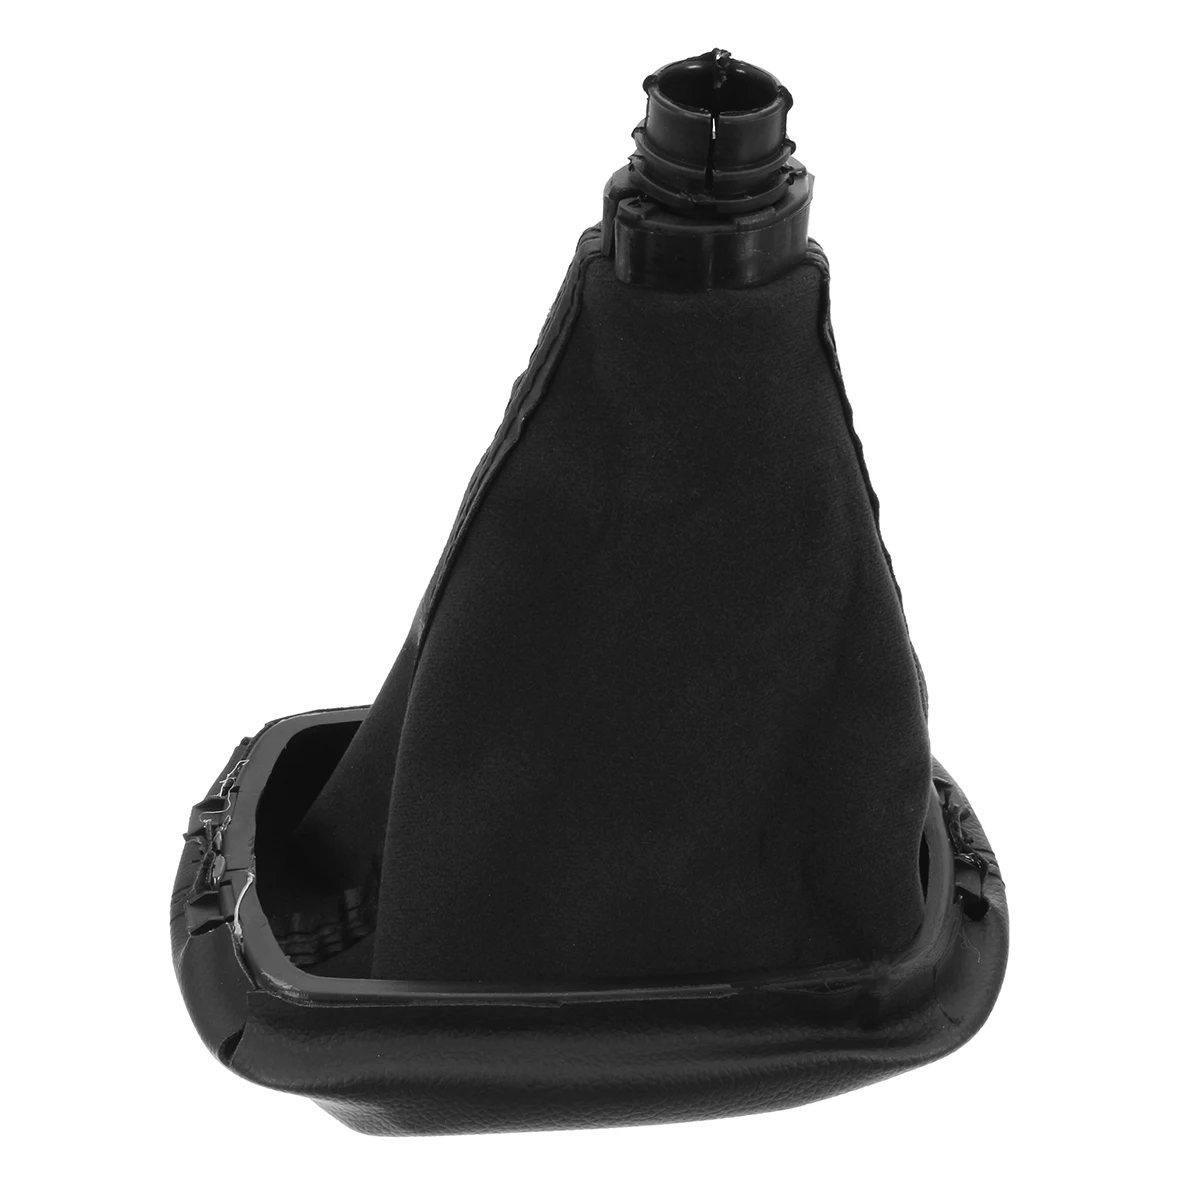 5 скоростей Ручка Переключения рулевого механизма автомобиля с кобурой черный чехол fReplacement Kit для Skoda Octavia A4 1997-2011